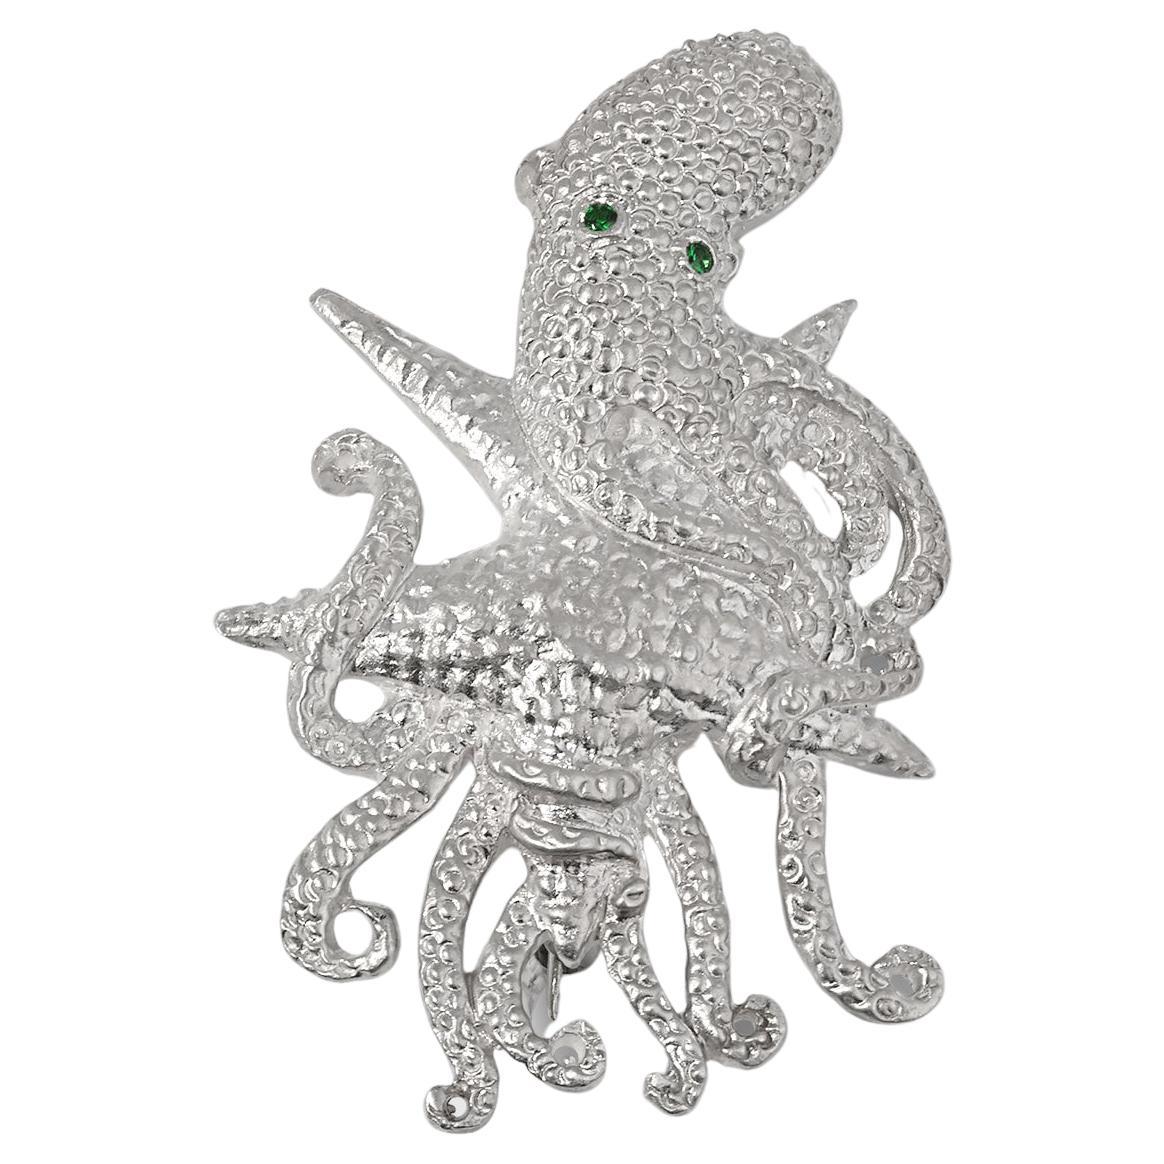 Stunning Sterling Detailed Octopus Brooch Pin w/ Bright Green Tsavorite Eyes